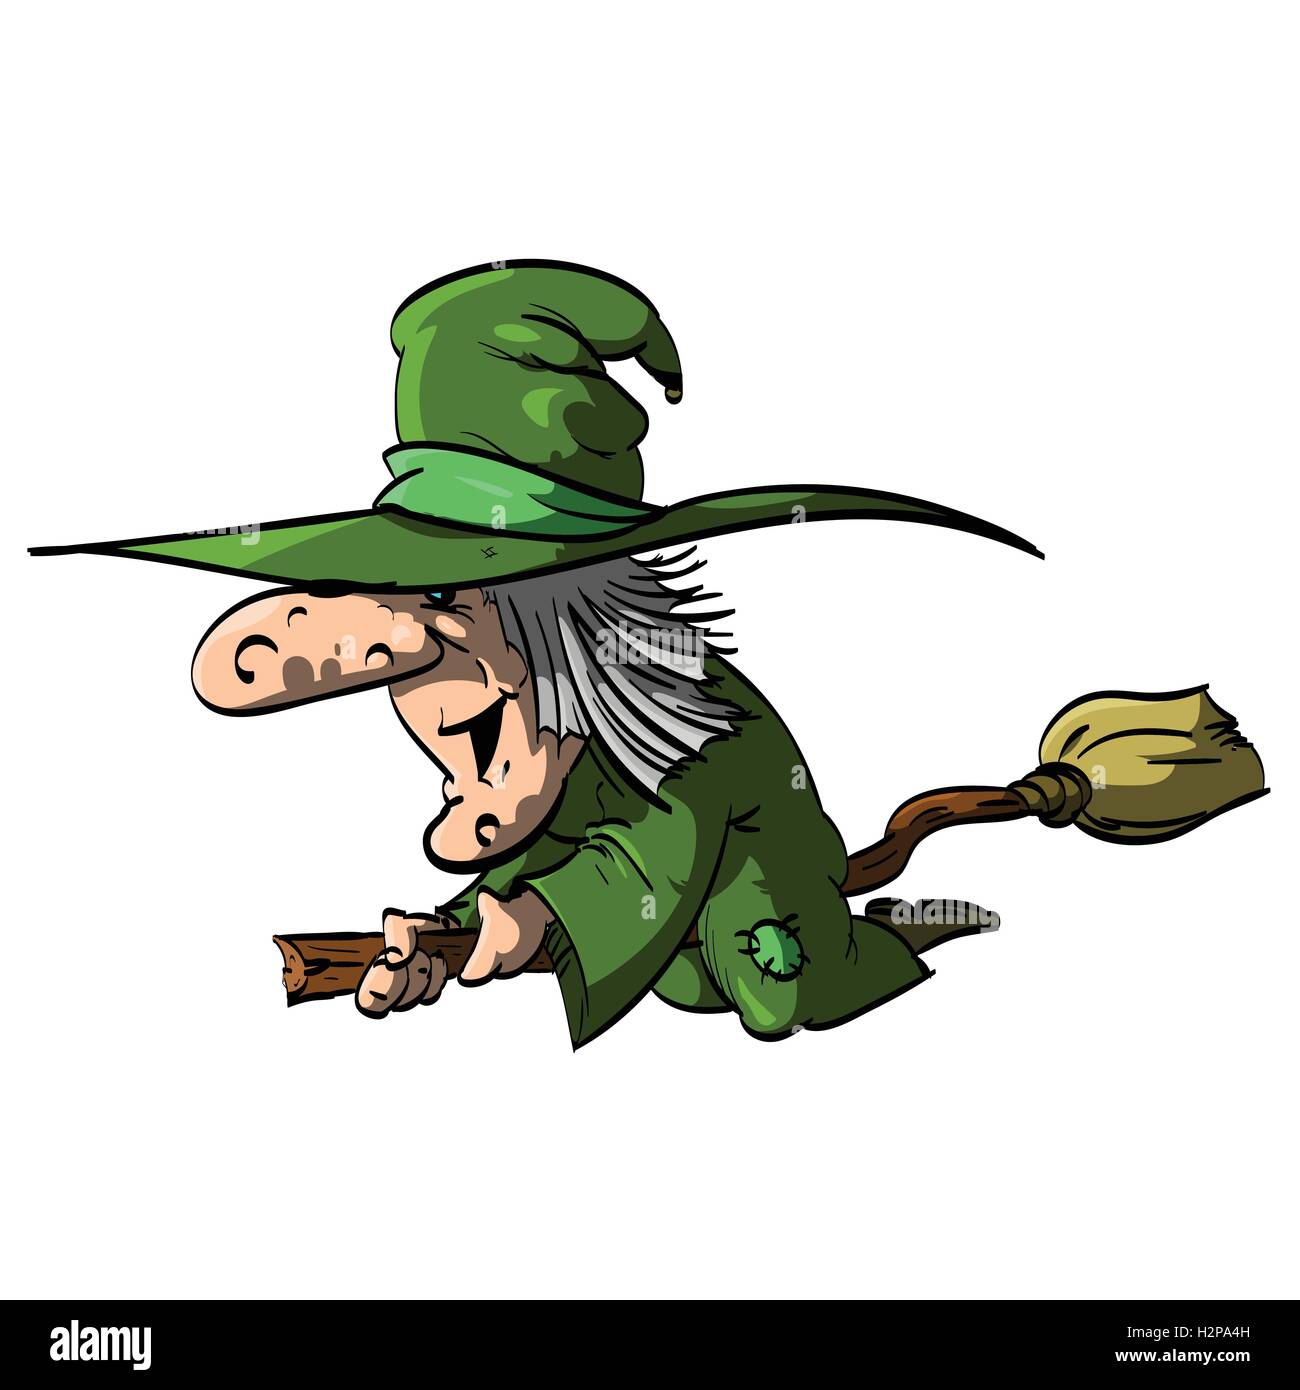 Vektor-Illustration von einem Befana oder eine Hexe fliegen auf einem Besen, mit grüne Kleidung / robe Stock Vektor